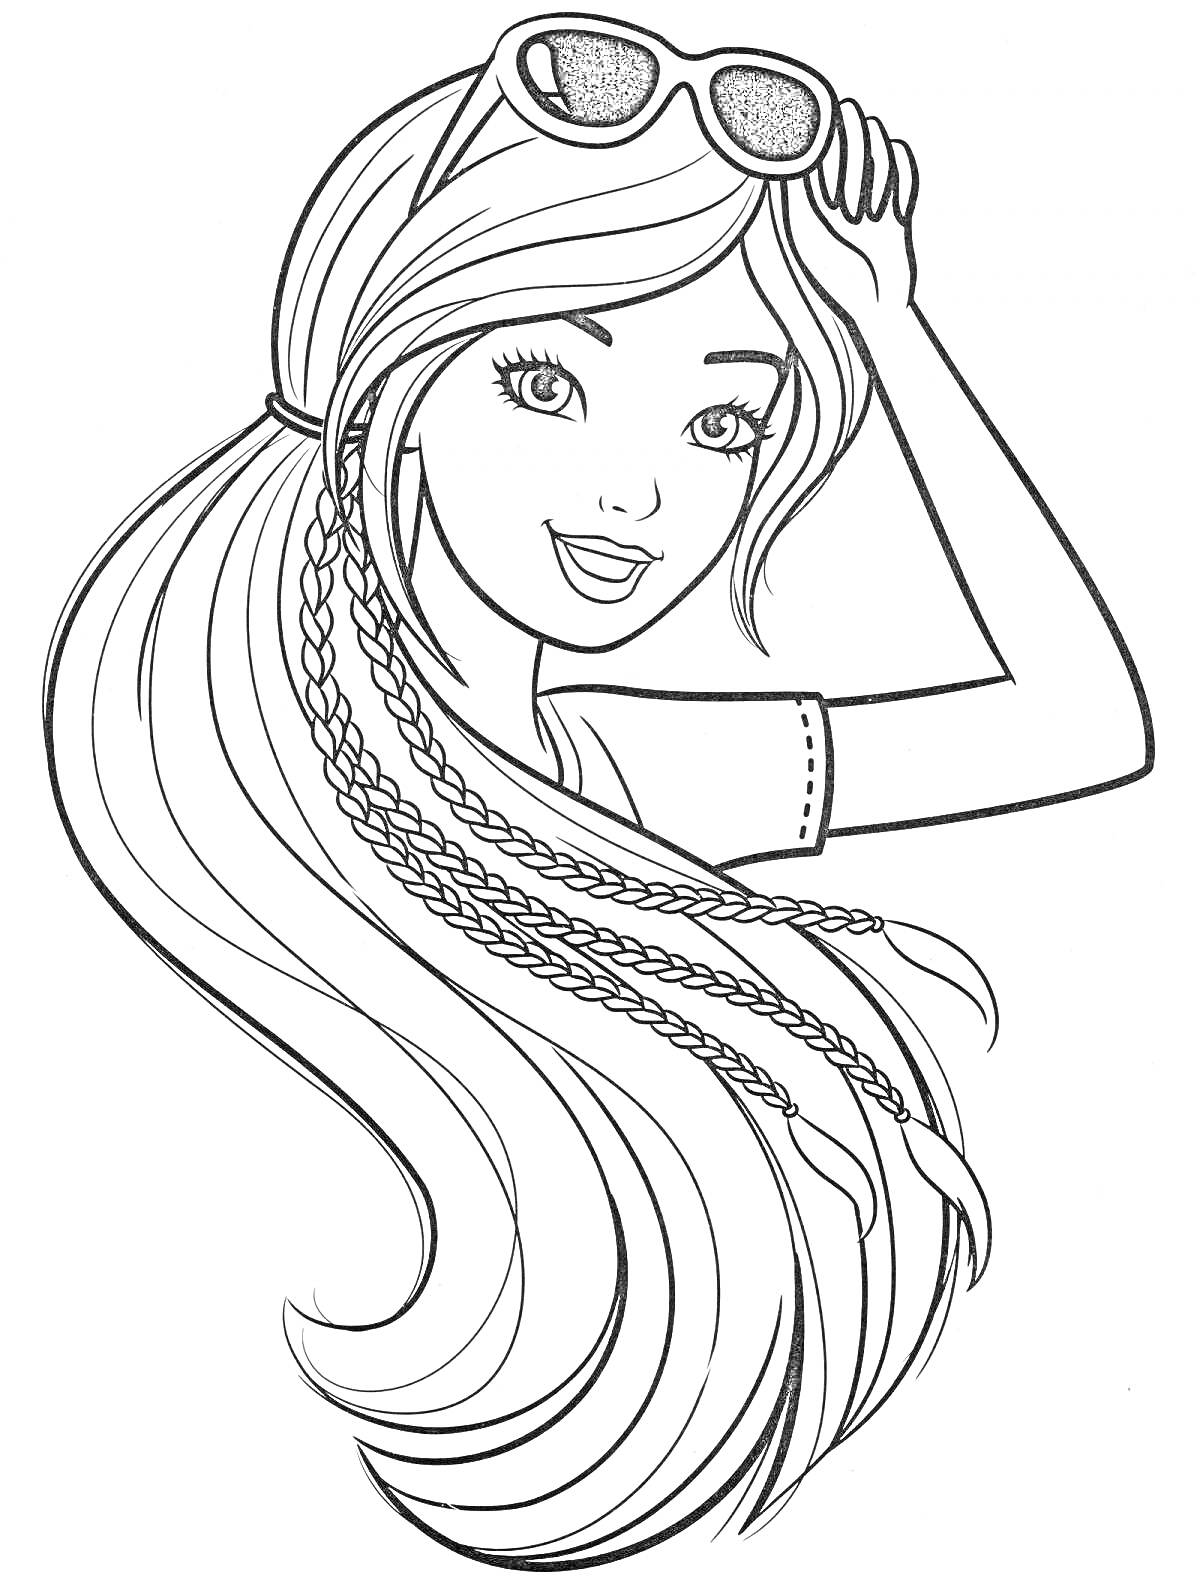 Раскраска Девочка с длинными волосами, солнцезащитными очками и косичками